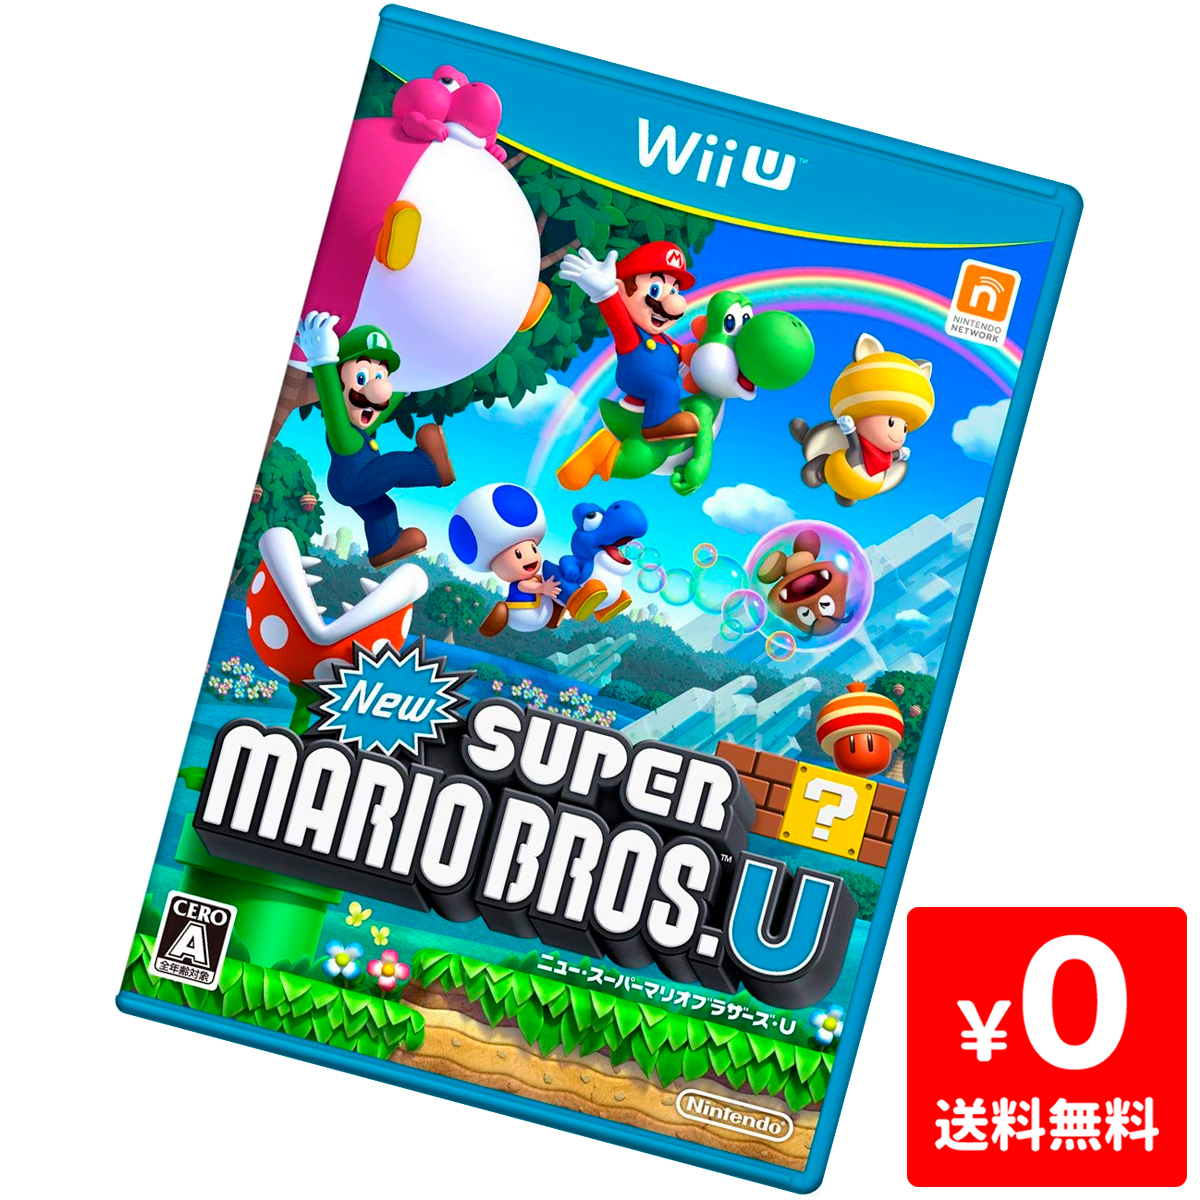 良い Wiiu ニンテンドーwii U ウィーユー New スーパーマリオブラザーズu ソフト 任天堂 Nintendo 中古